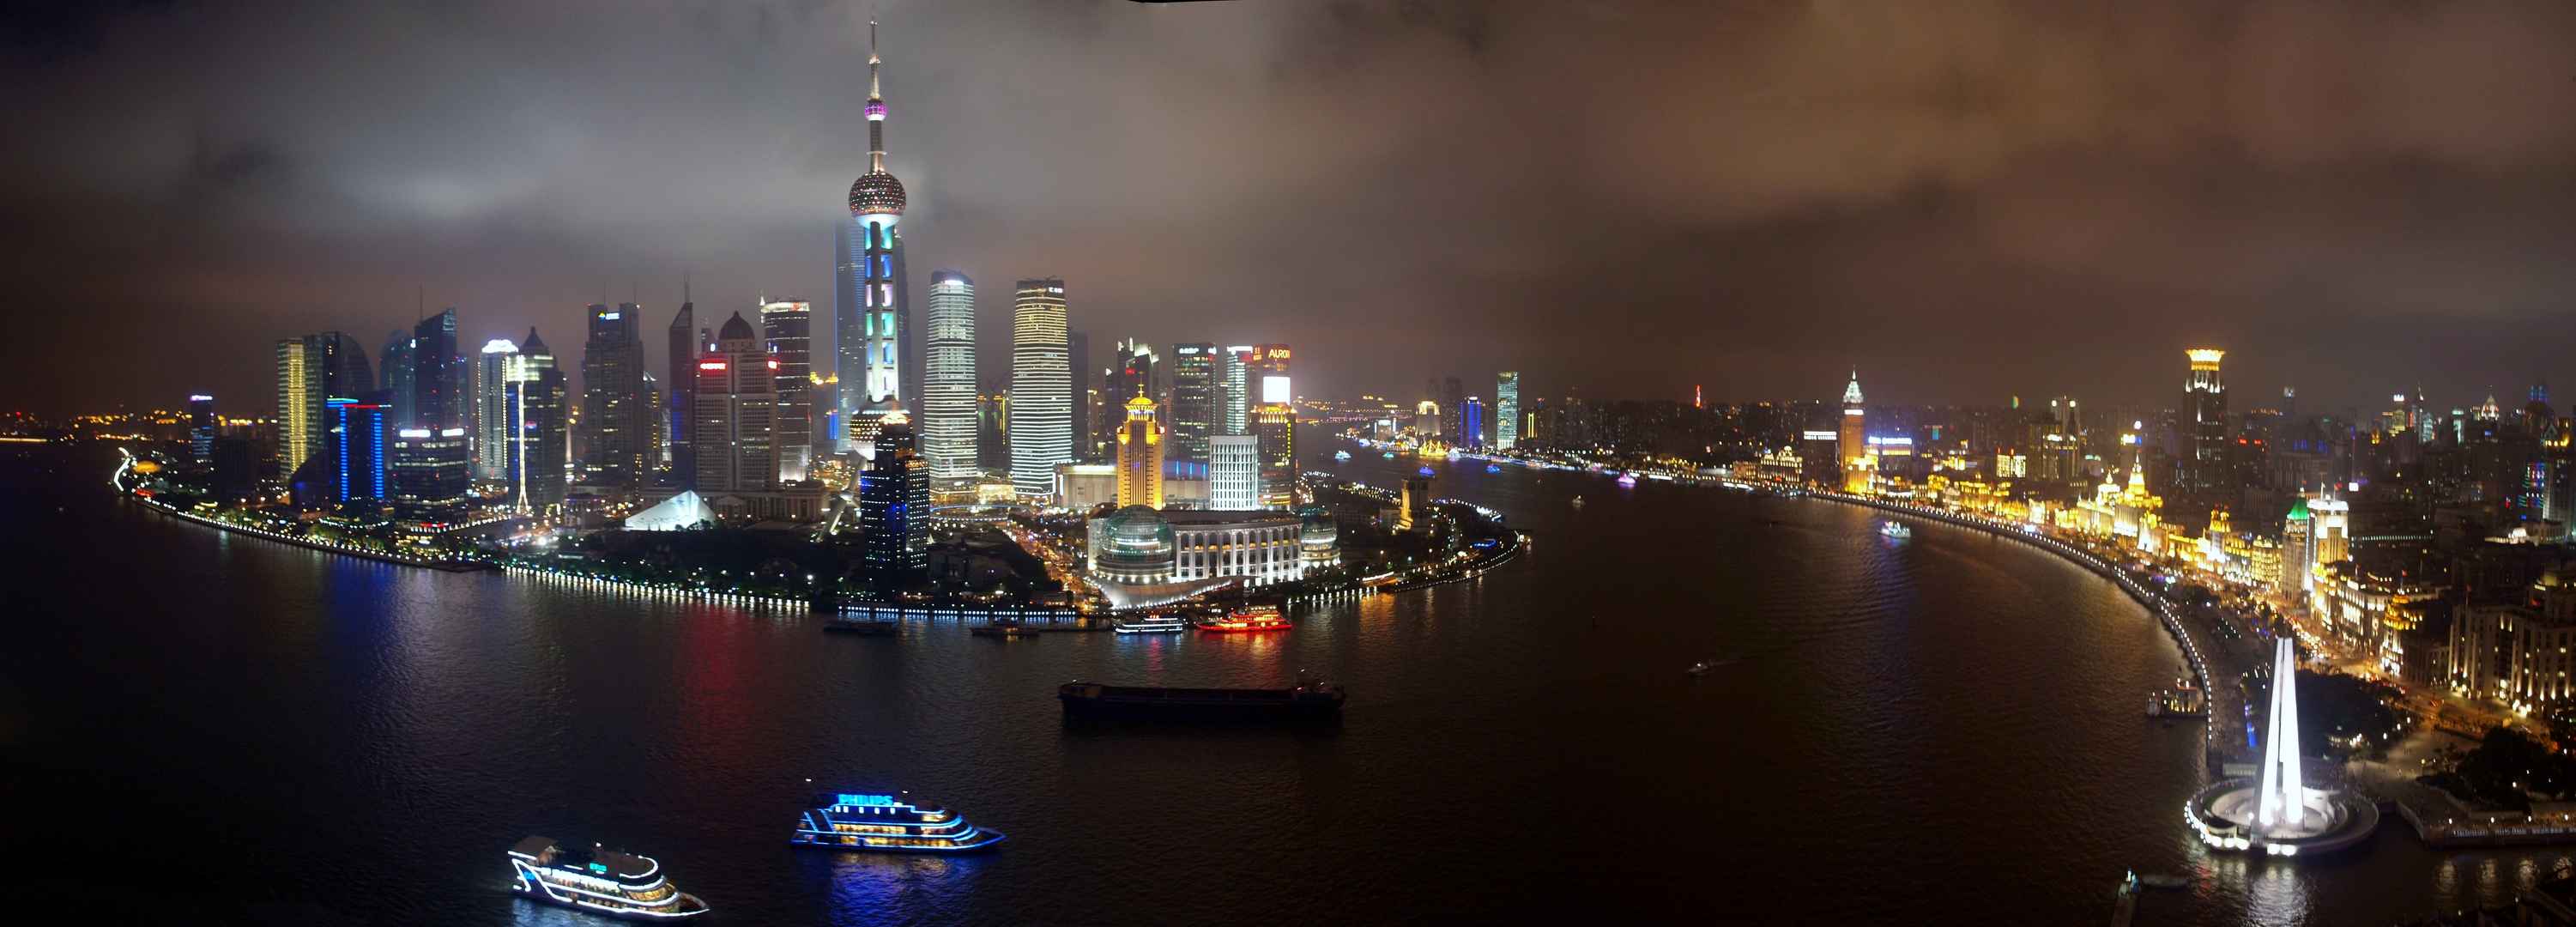 上海明珠夜景璀璨8K壁纸-